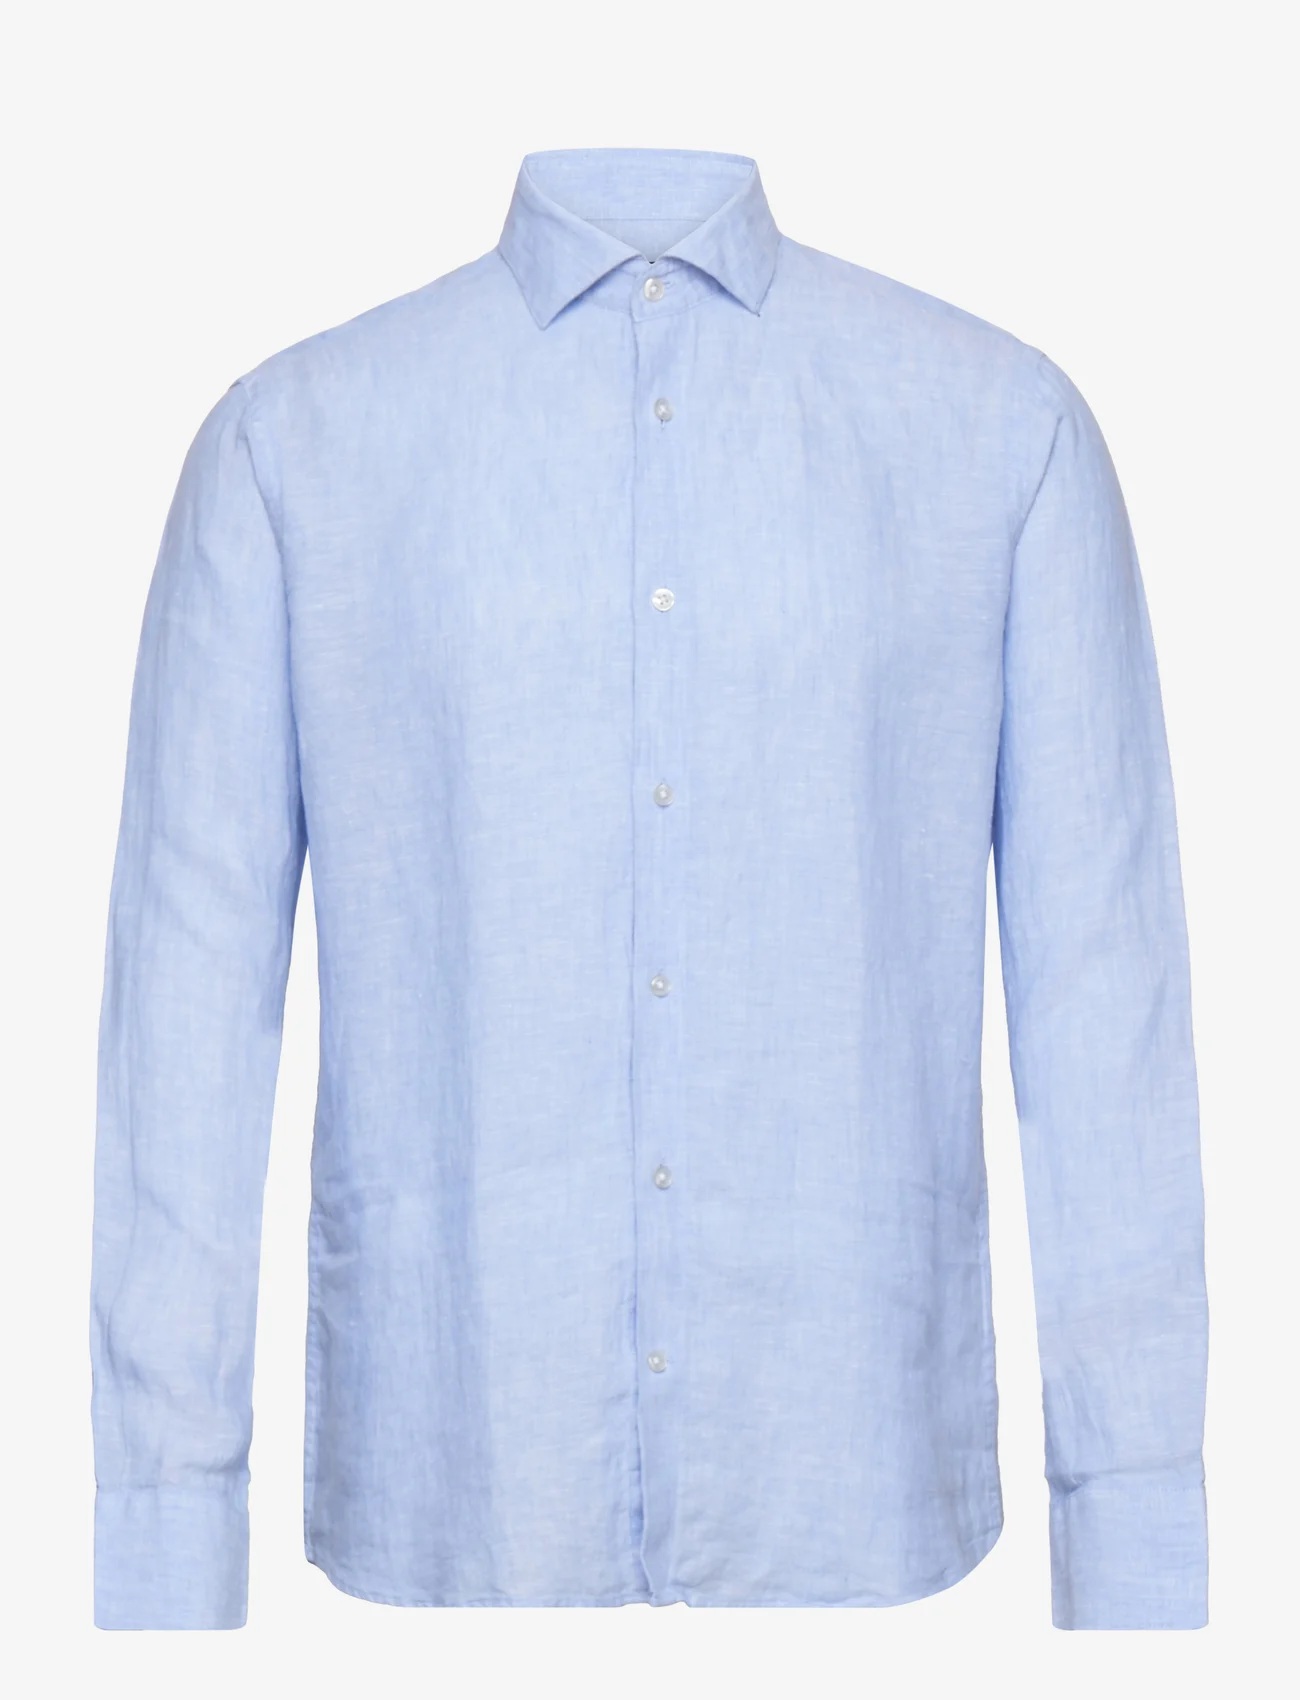 Bruun & Stengade - BS Taishi Casual Modern Fit Shirt - hørskjorter - light blue - 0